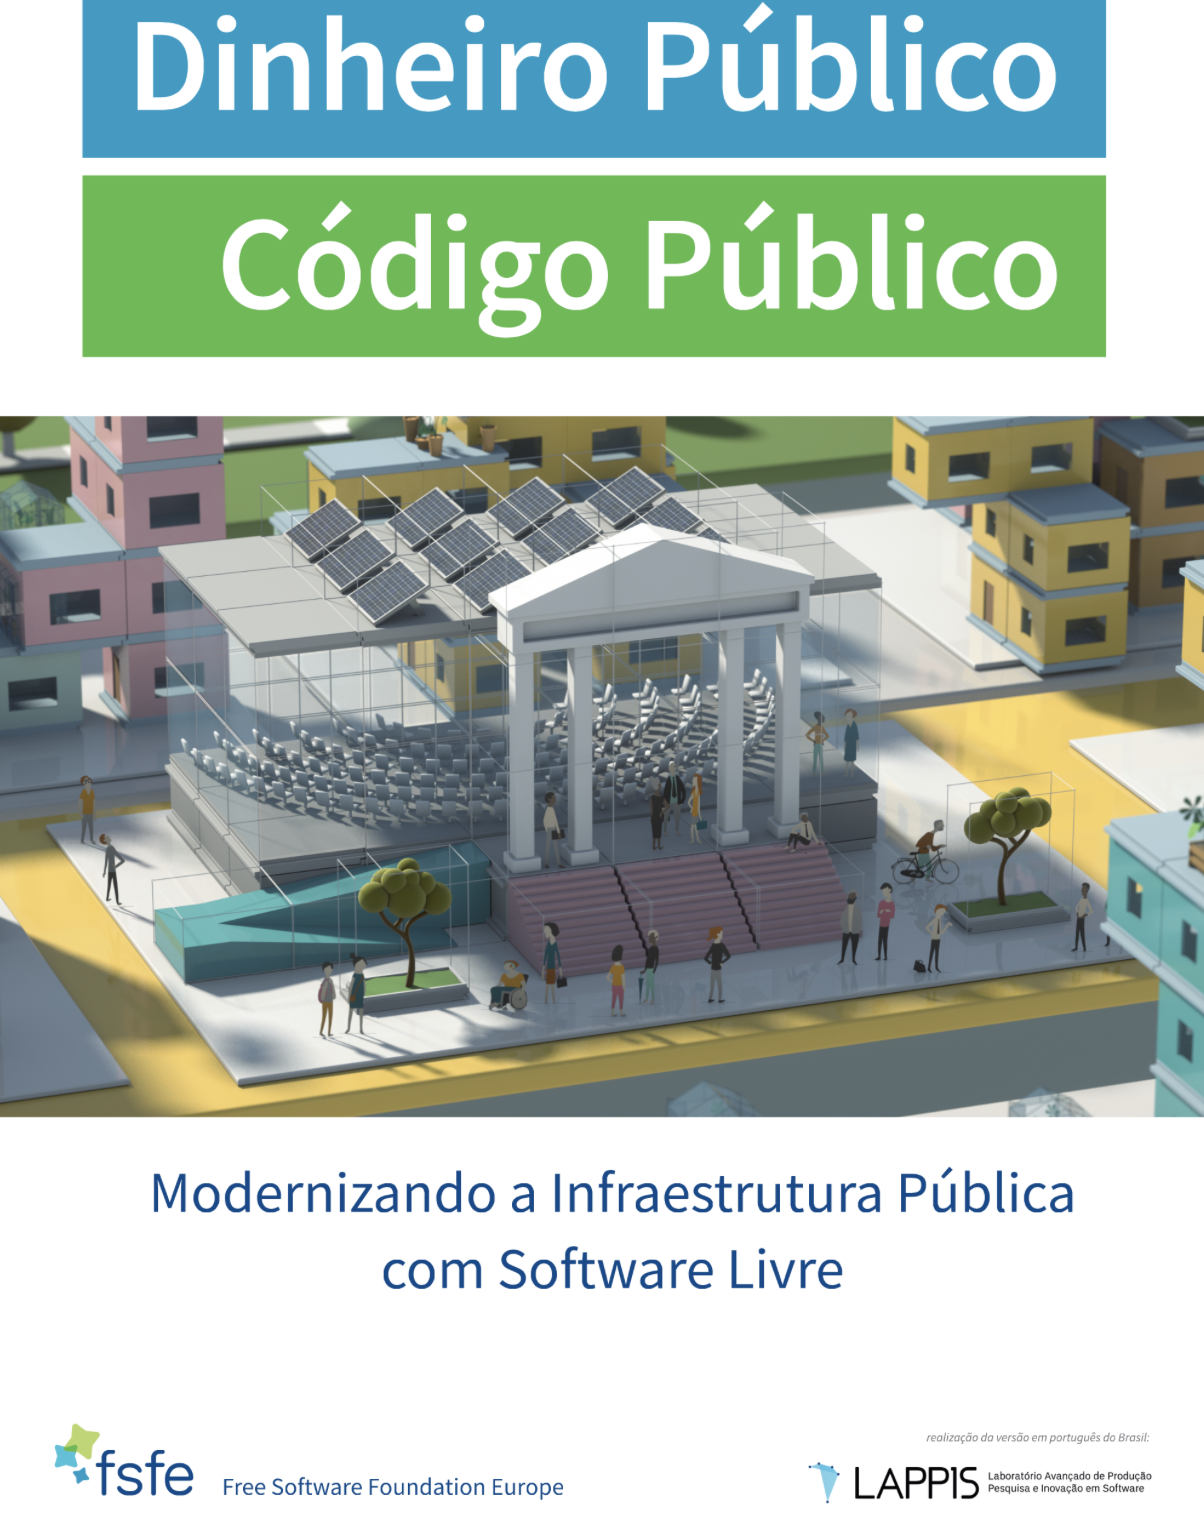 Dinheiro Público Código Publico - Modernizando a Infraestrutura Pública com Software Livre